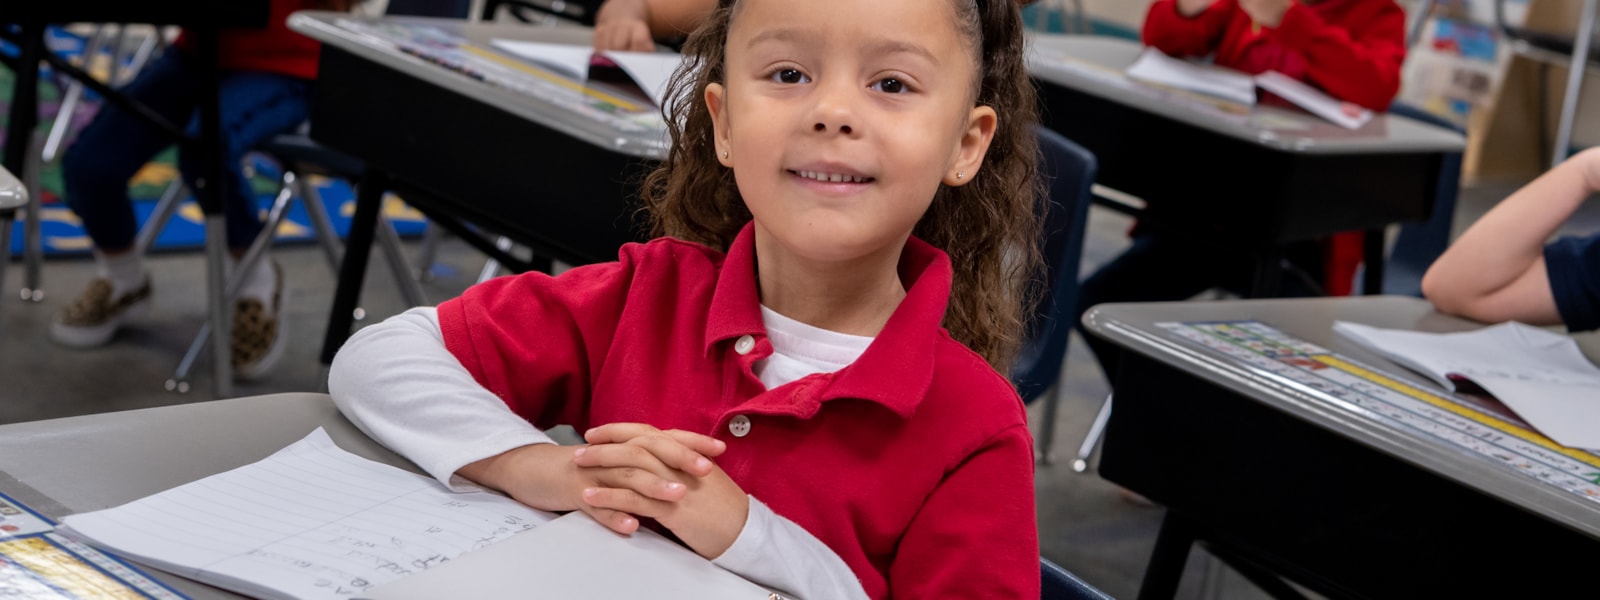 Kindergarten student sitting at desk smiling